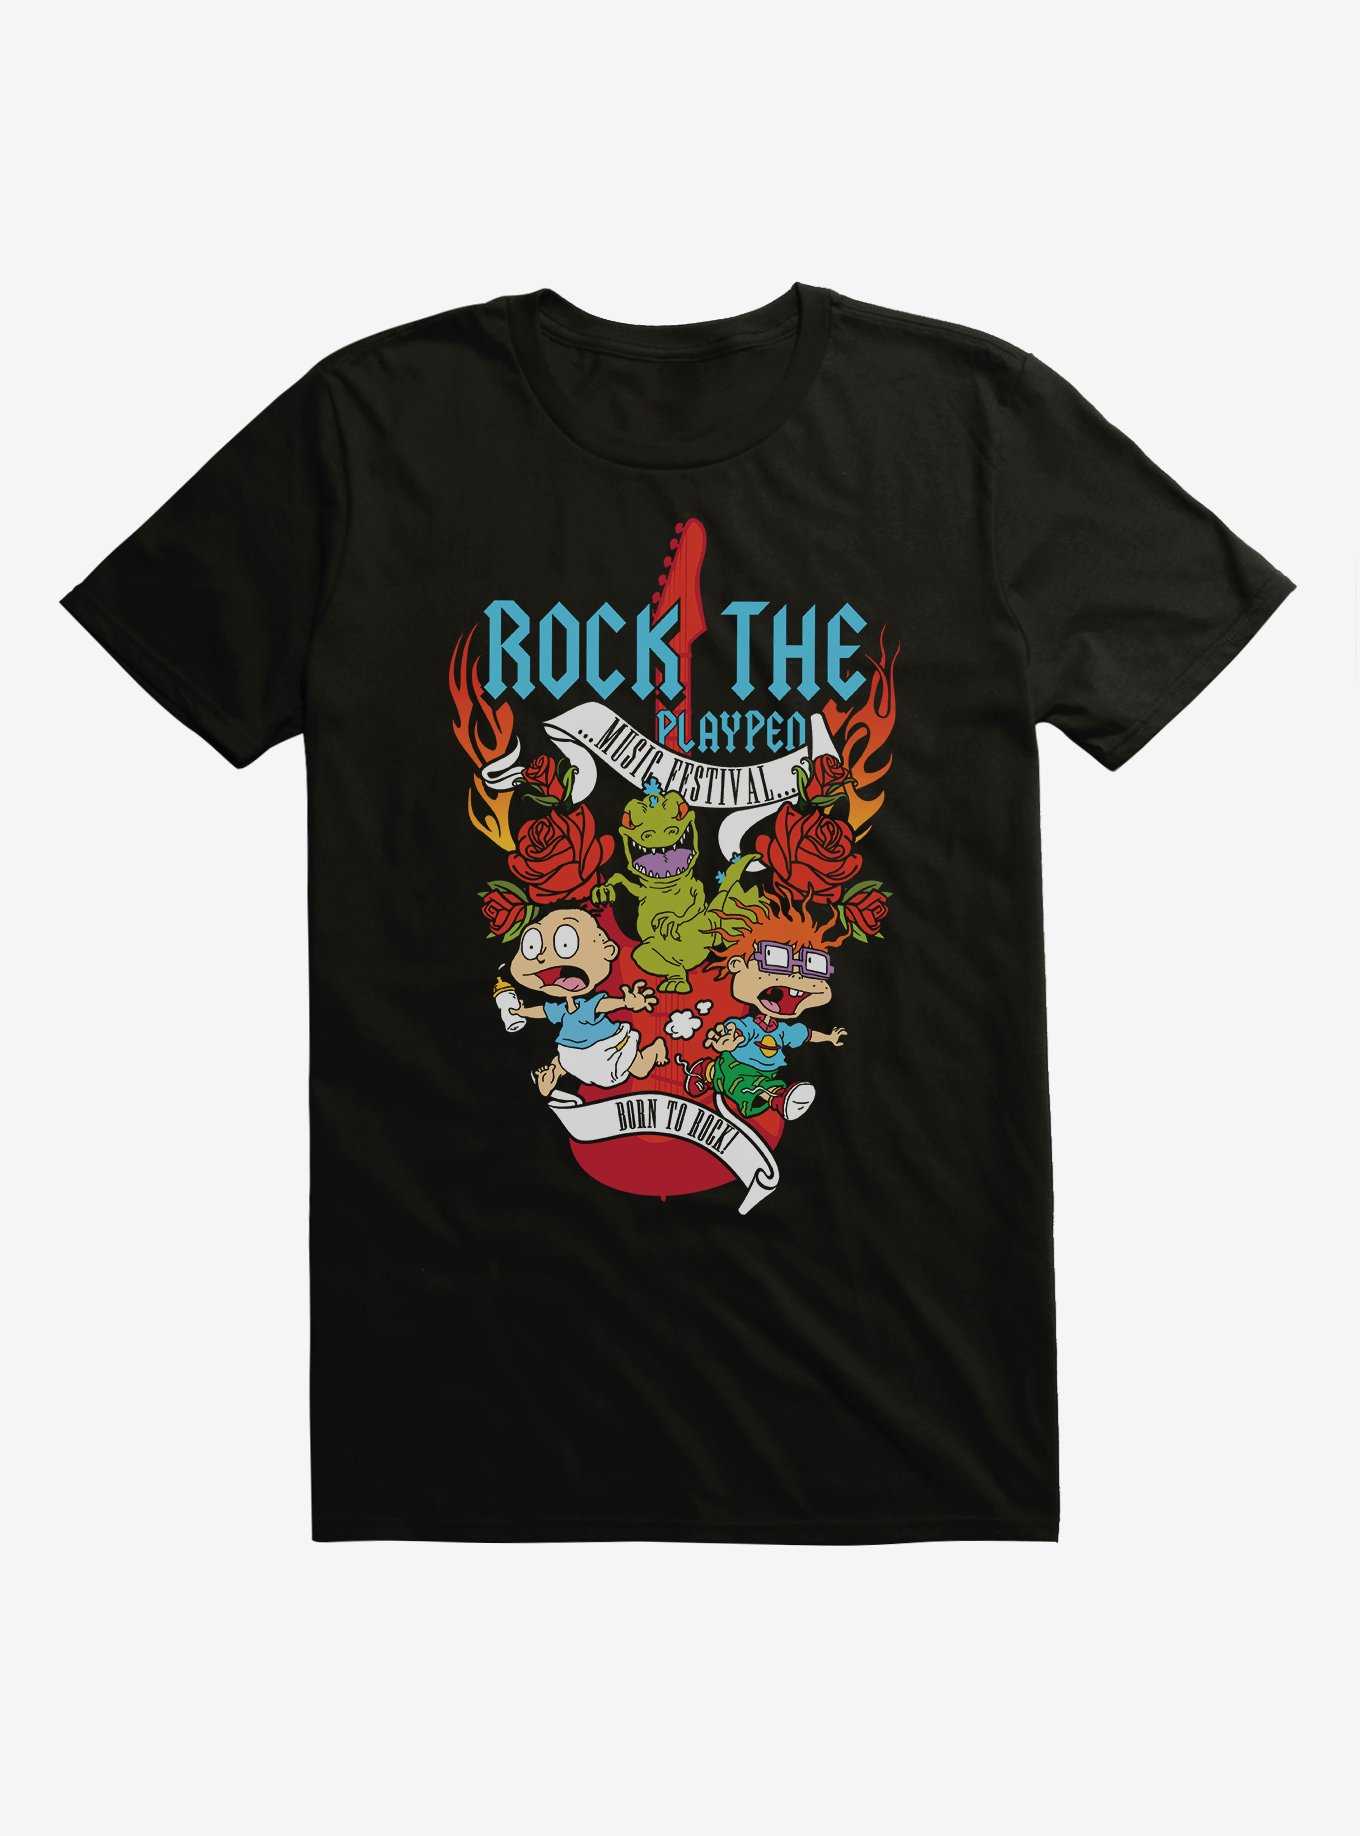 Rugrats Rock the Play Pen T-Shirt, , hi-res